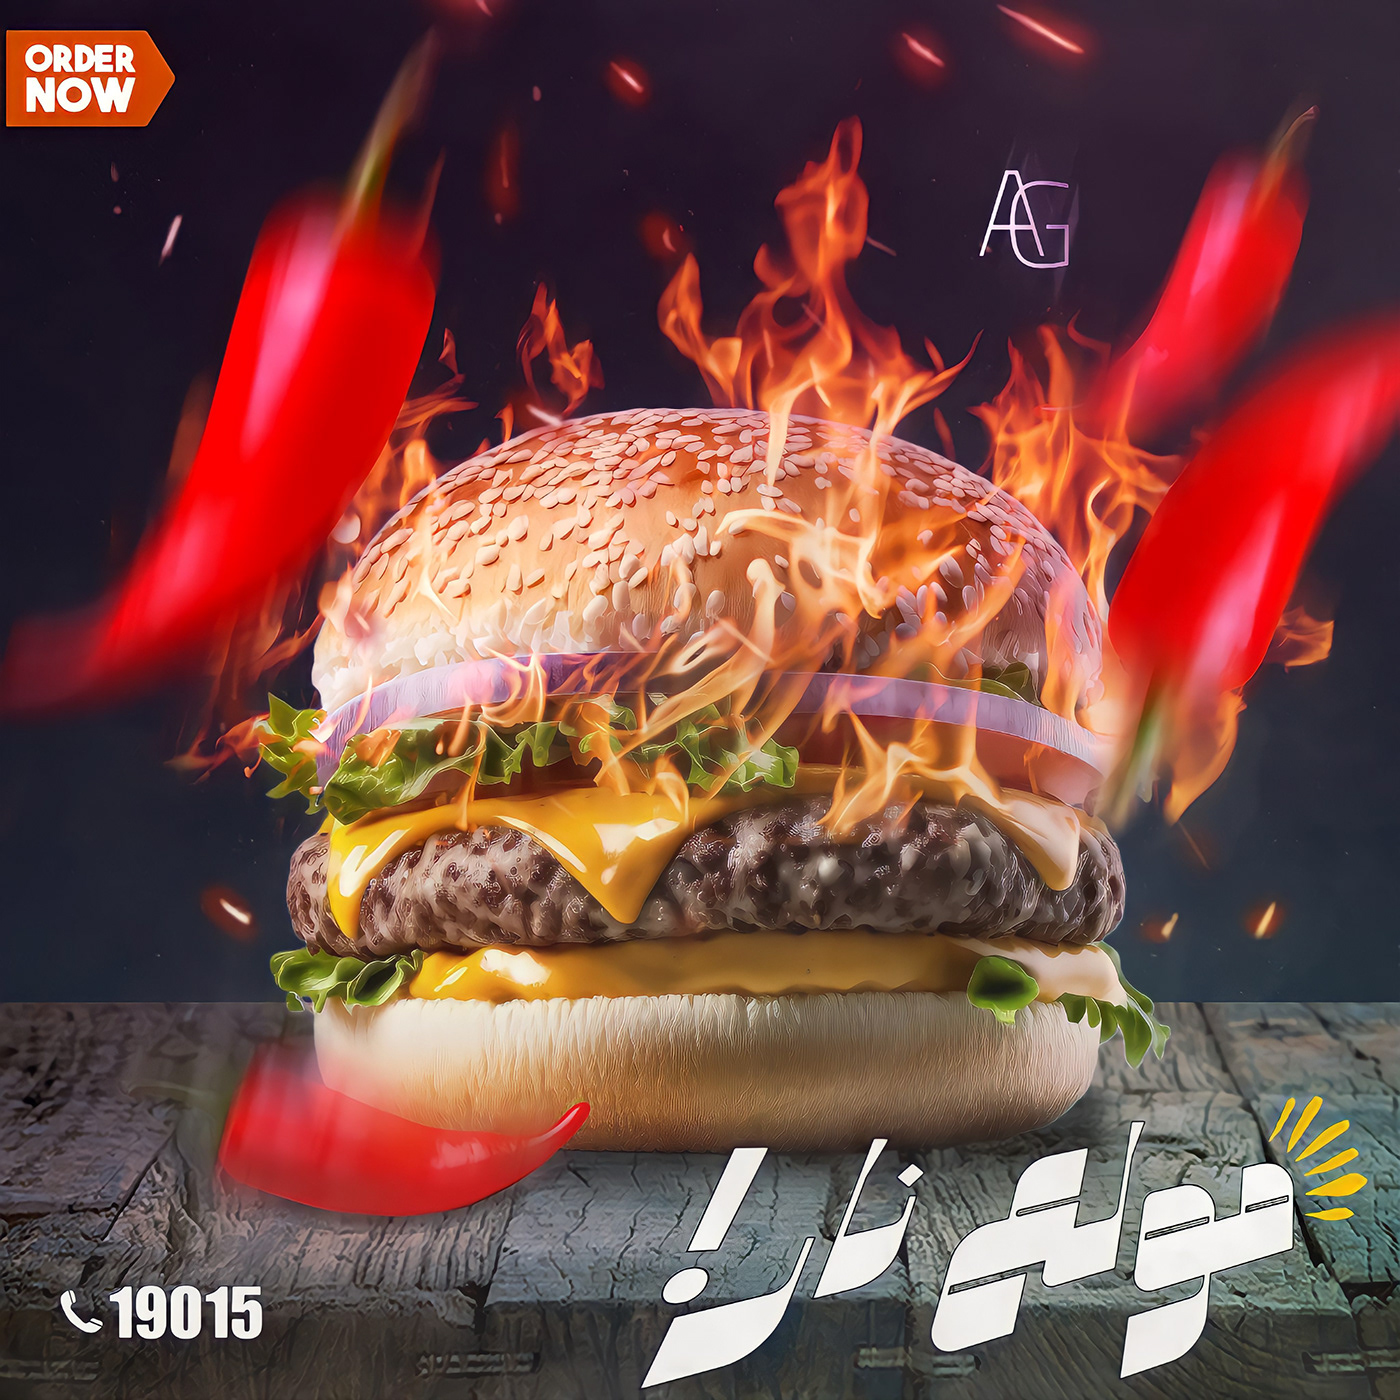 burger chili jalapeno ads advertisement on fire